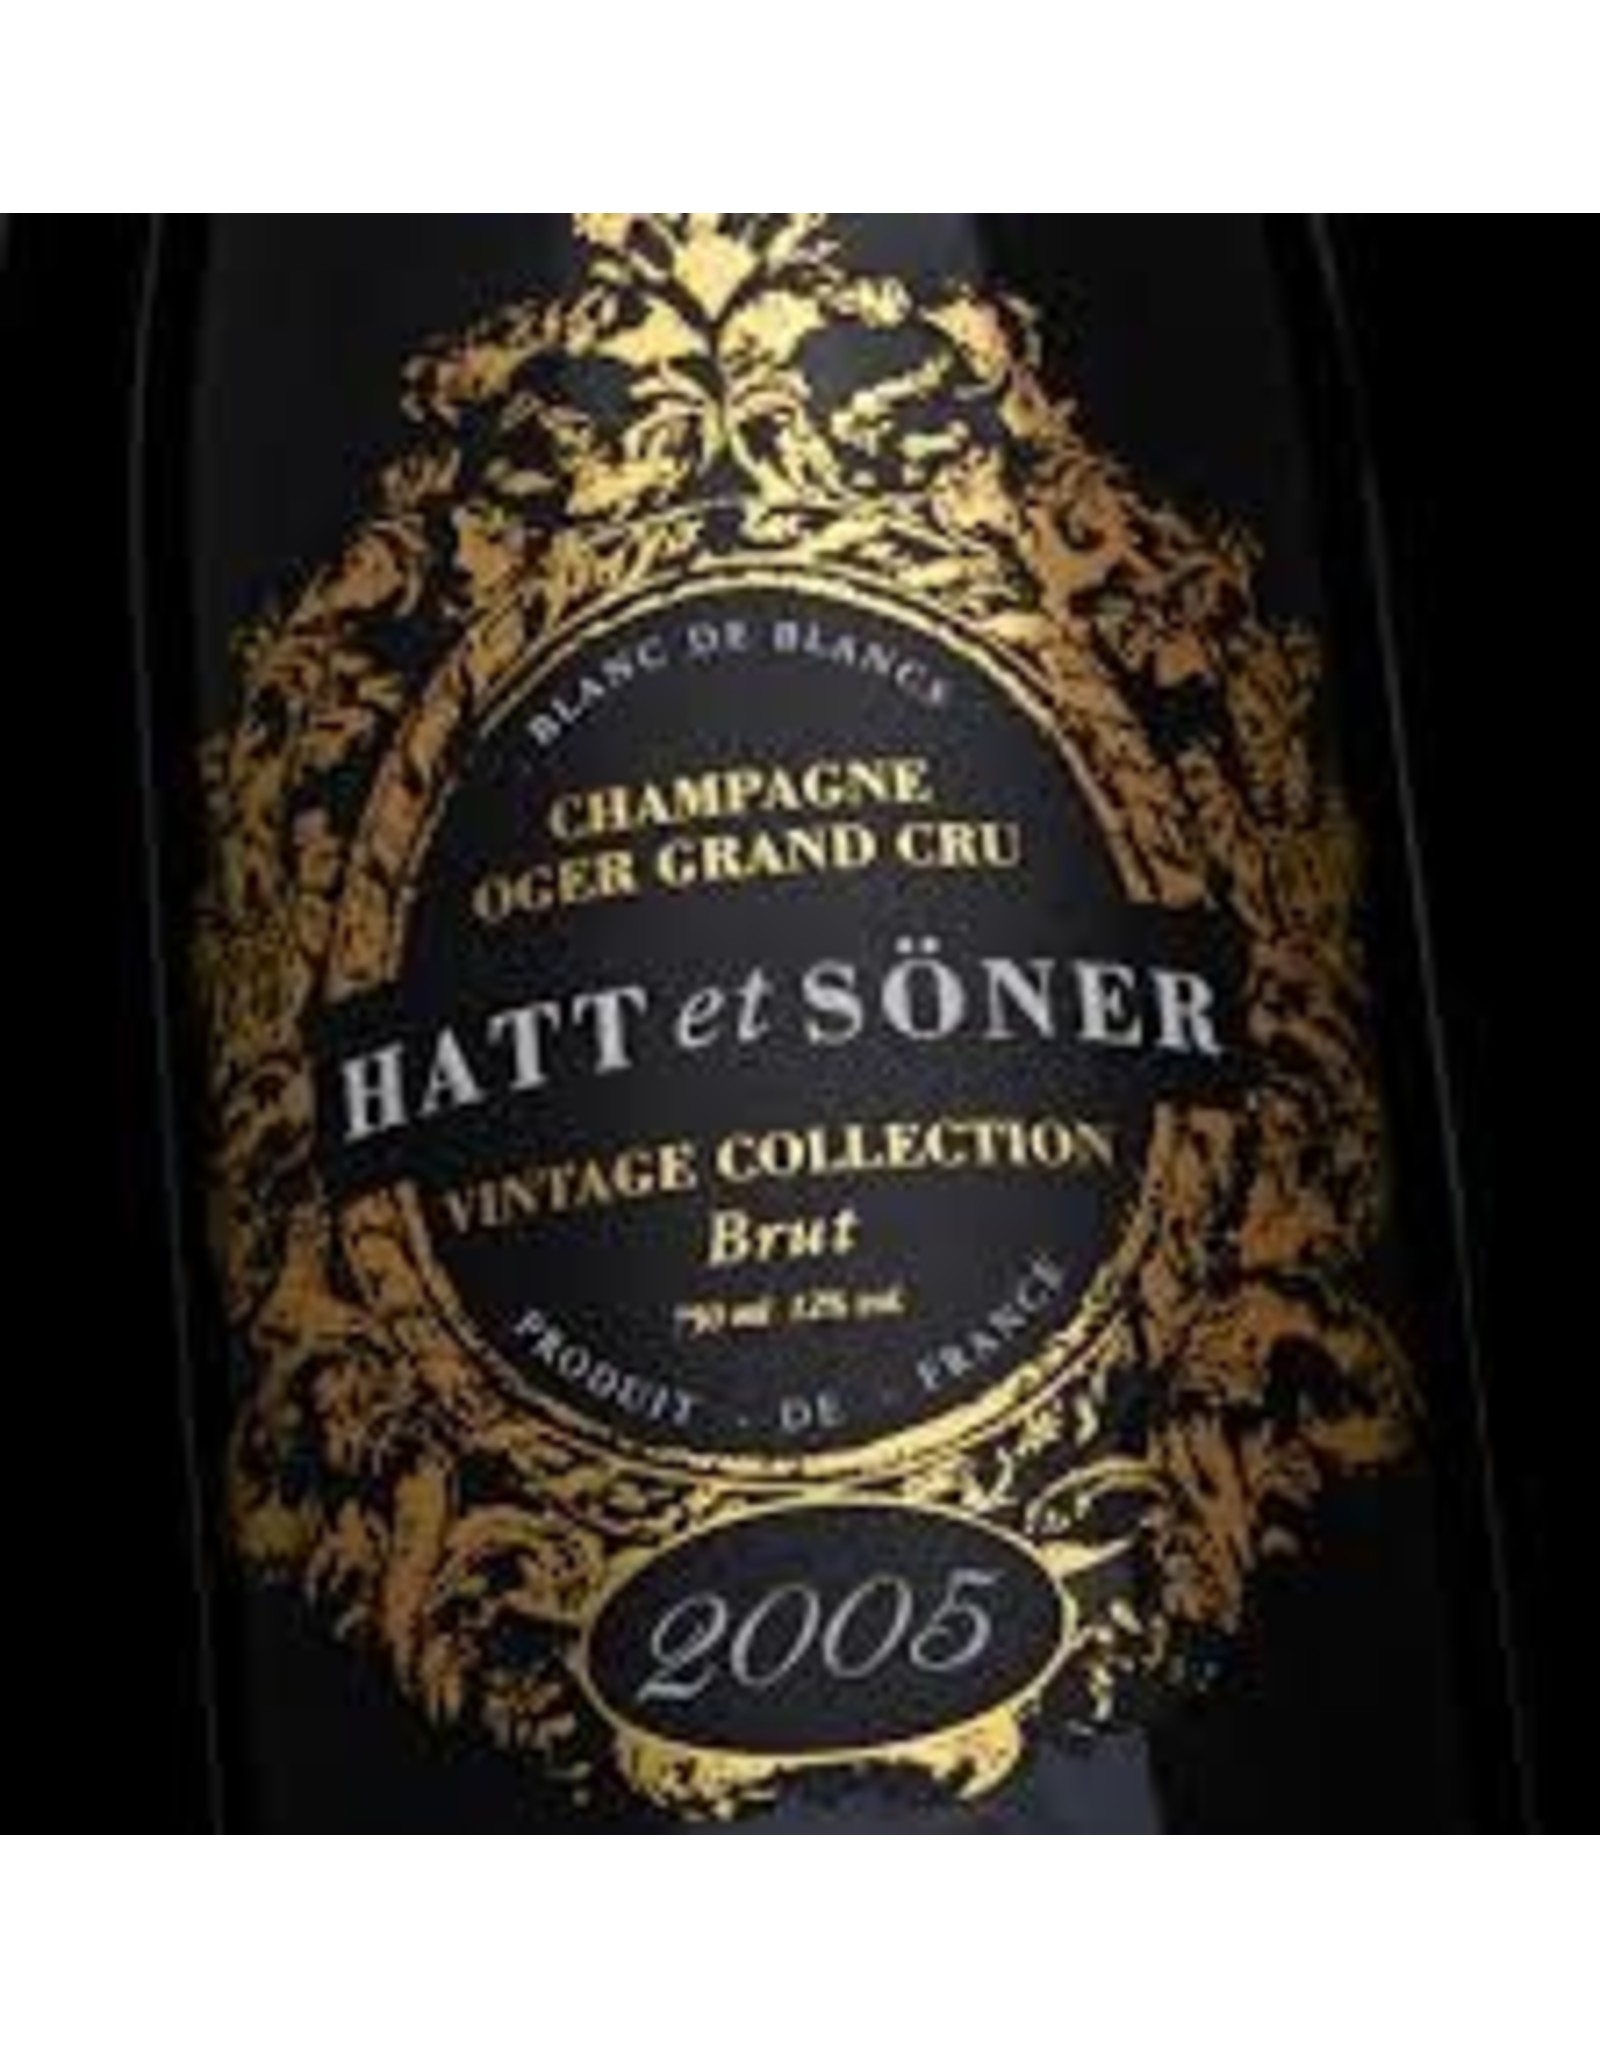 tonehøjde ben I tide Hatt et Soner Vintage Brut Champagne 2005 - Bern's Fine Wines & Spirits